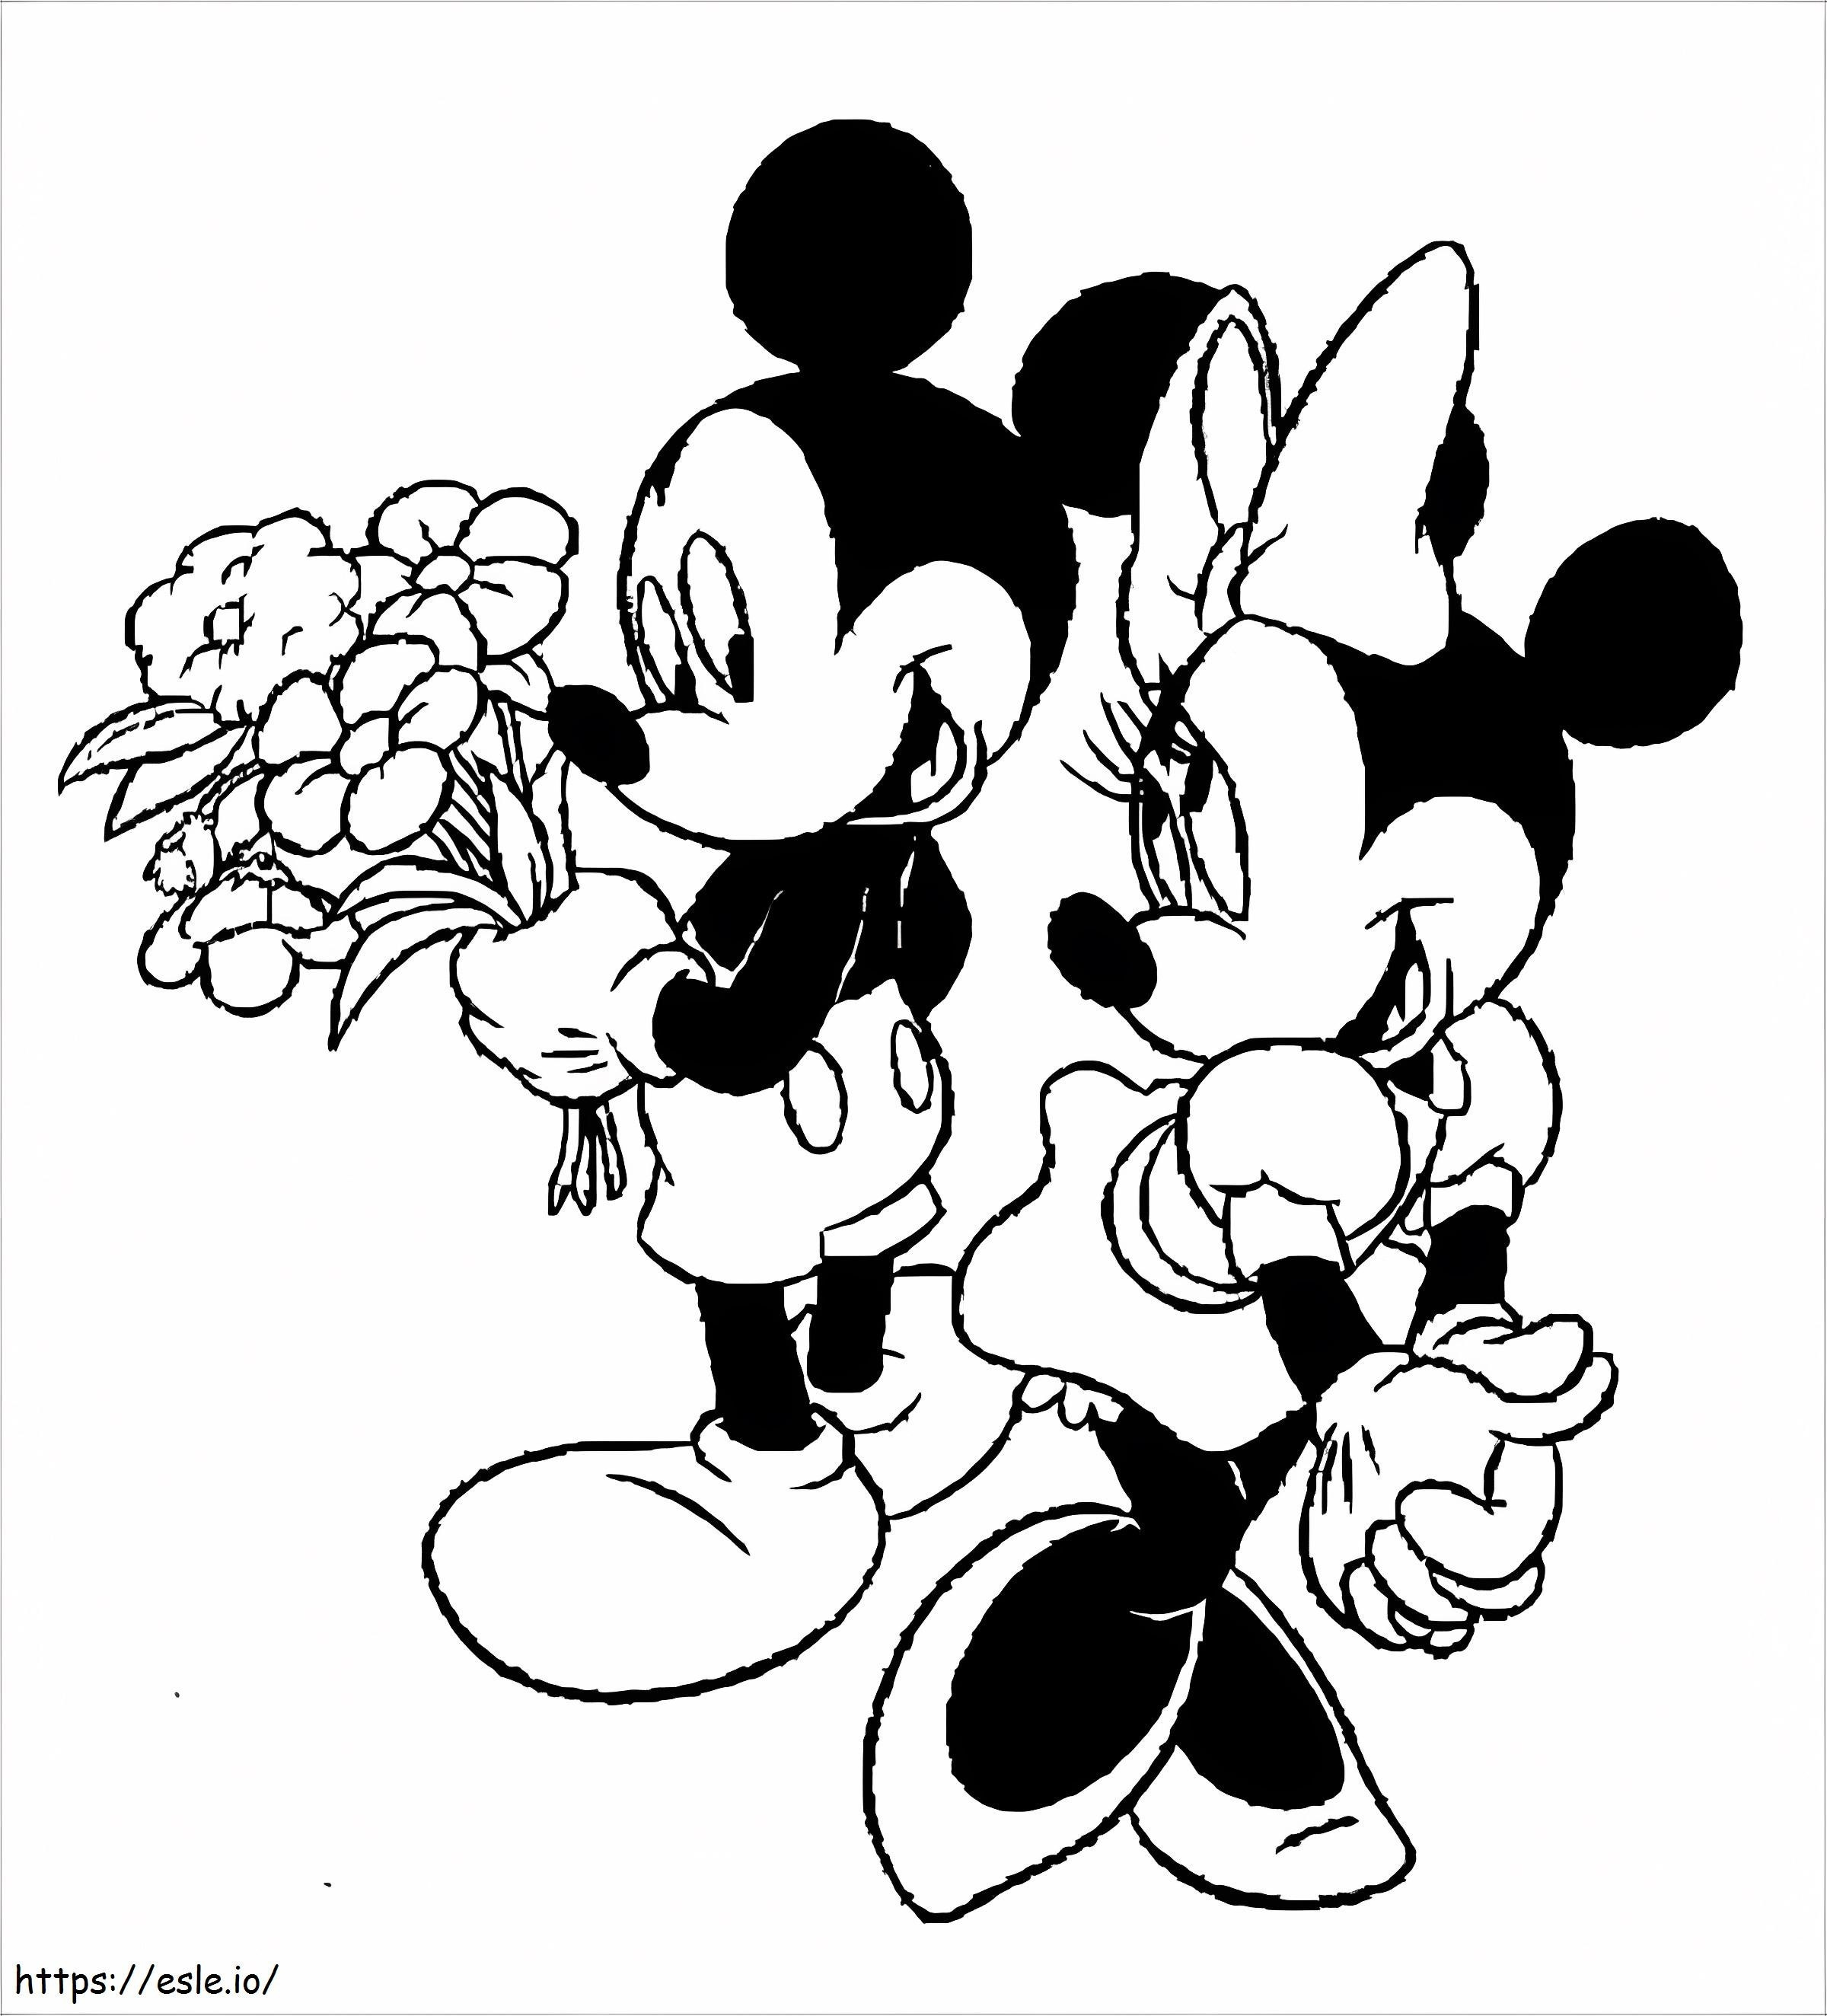 Topolino con in mano un mazzo di fiori e Minnie Mouse da colorare